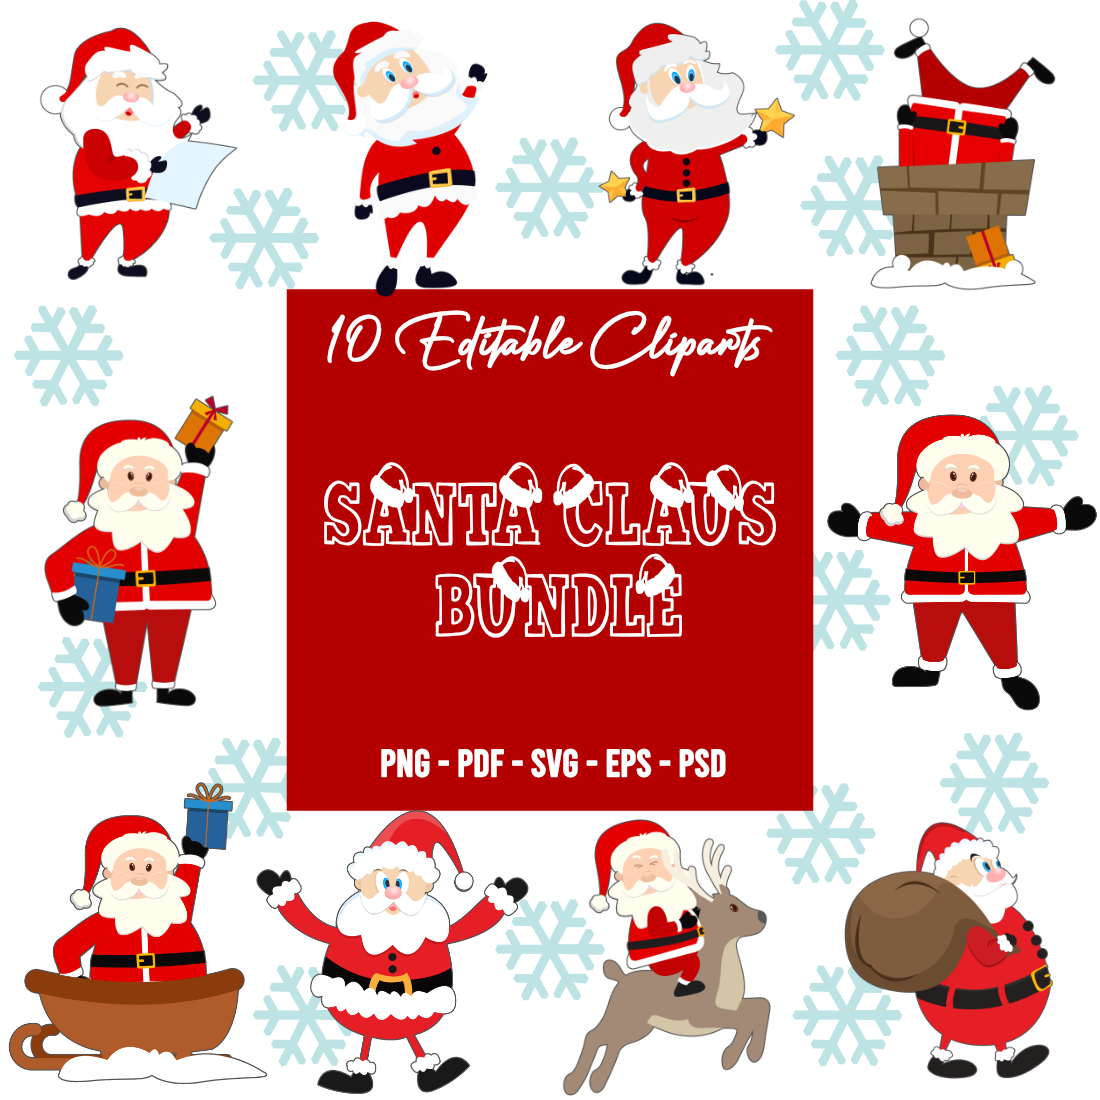 Santa Claus Bundle 10 Cliparts image.